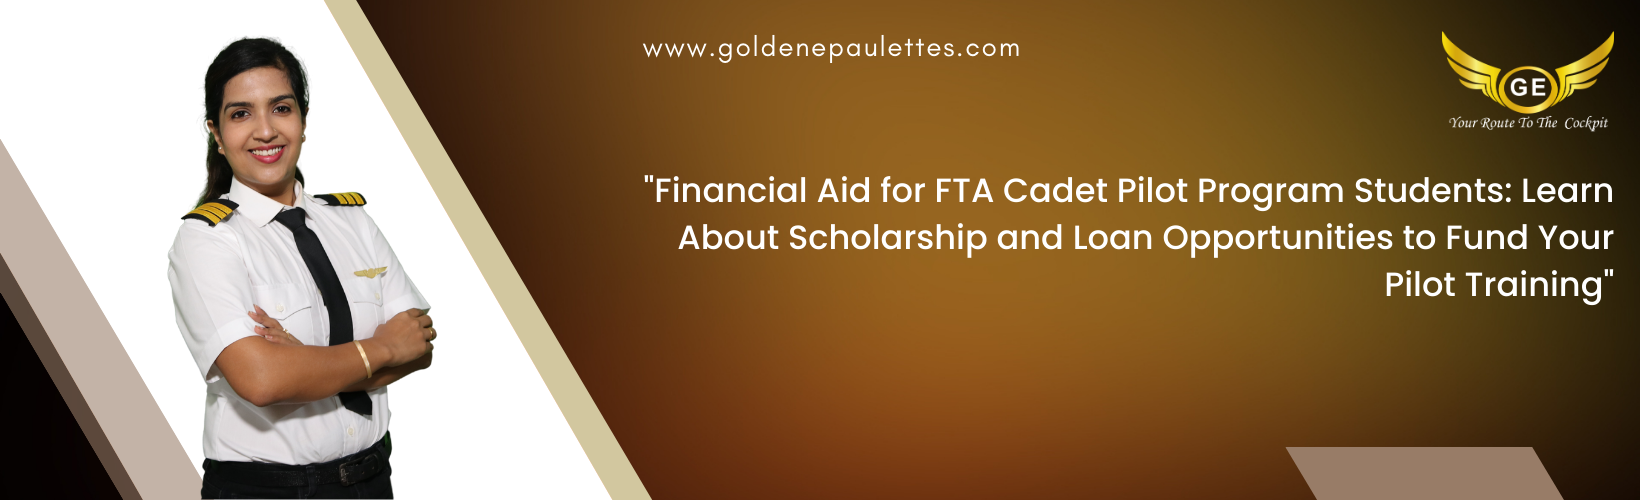 Financial Aid for FTA Cadet Pilot Program Students